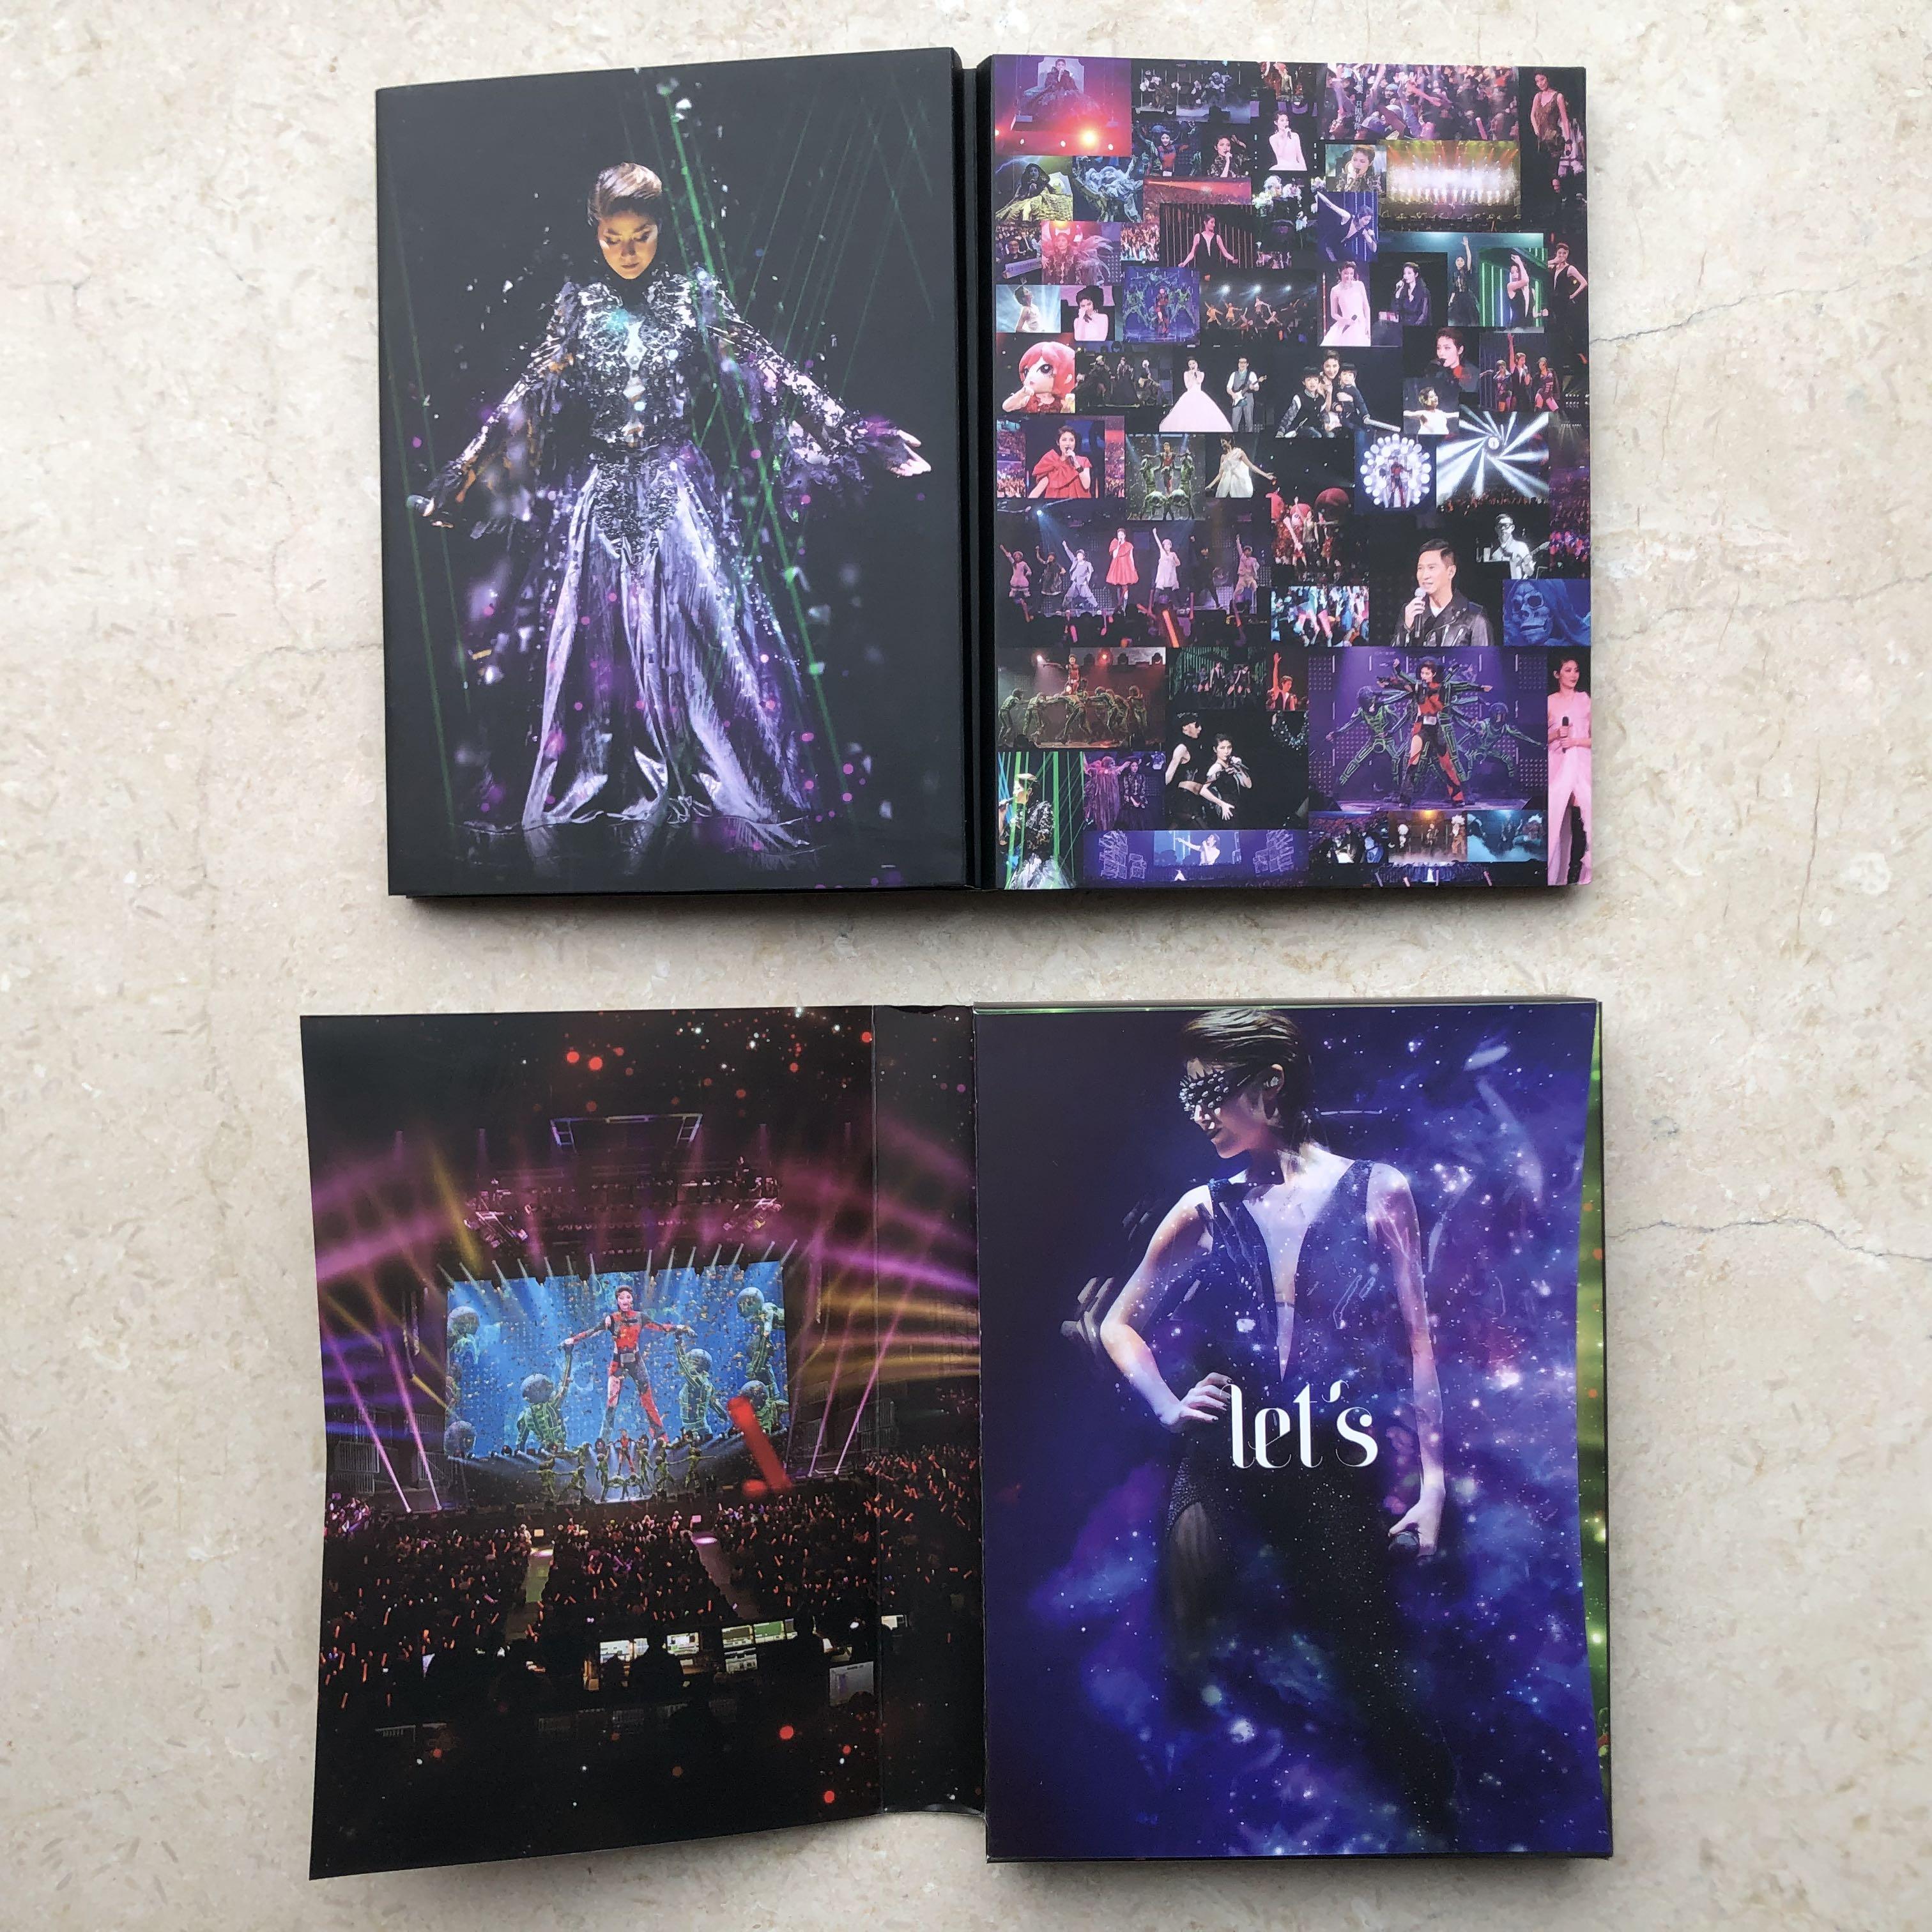 DVD丨陳慧琳Let's Celebrate! 世界巡迴演唱會2015 / Kelly Let's